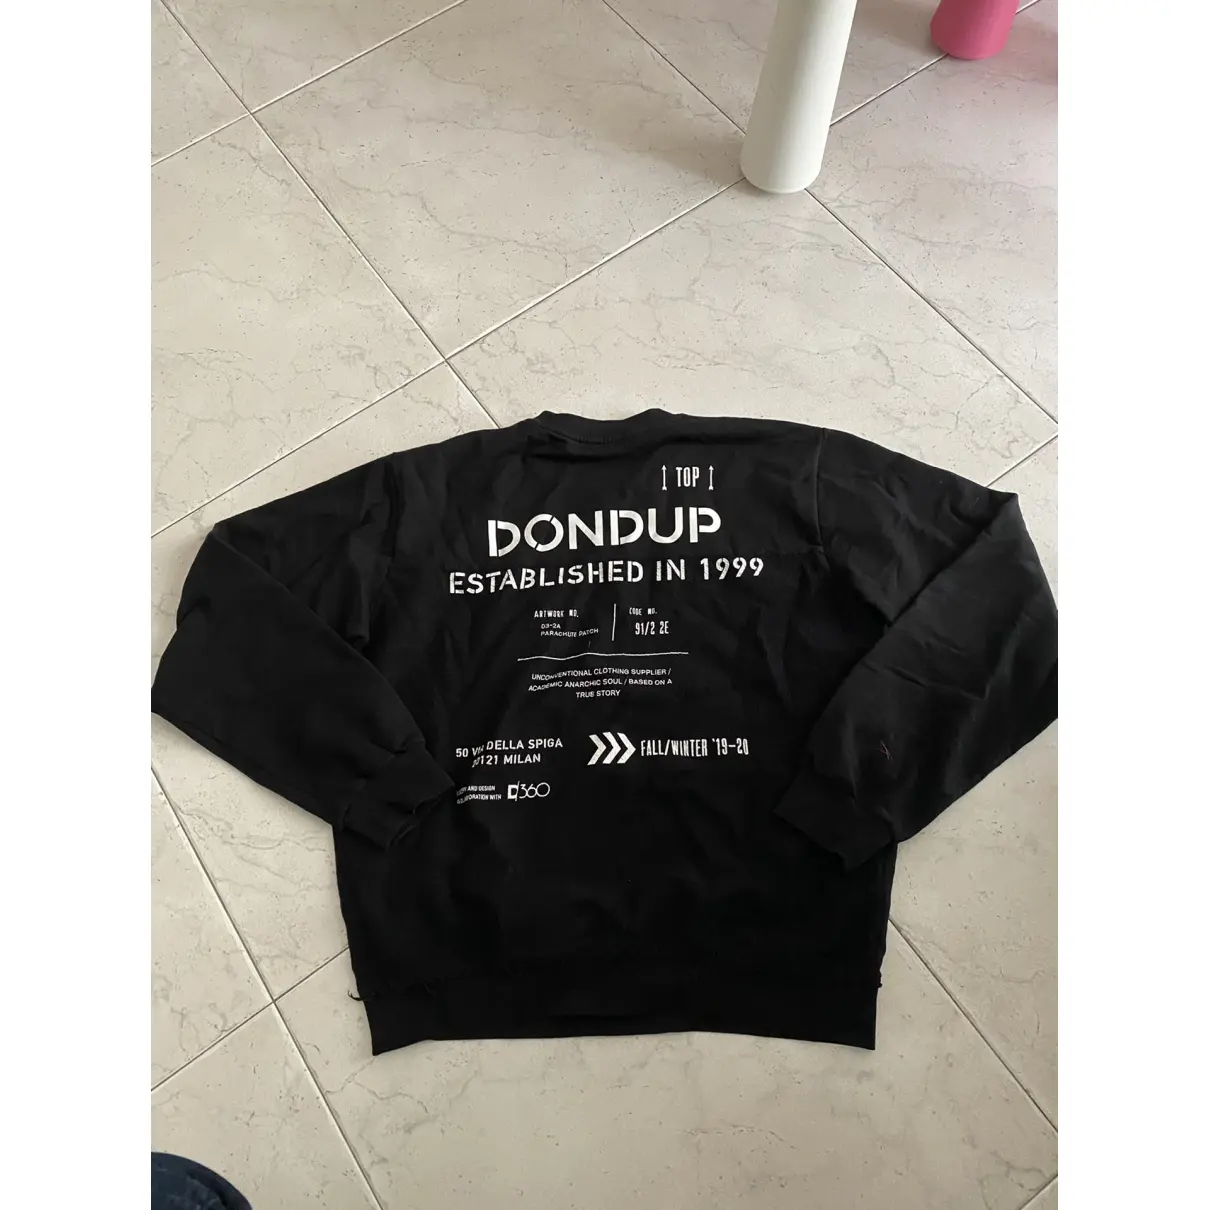 Buy Dondup Sweat online